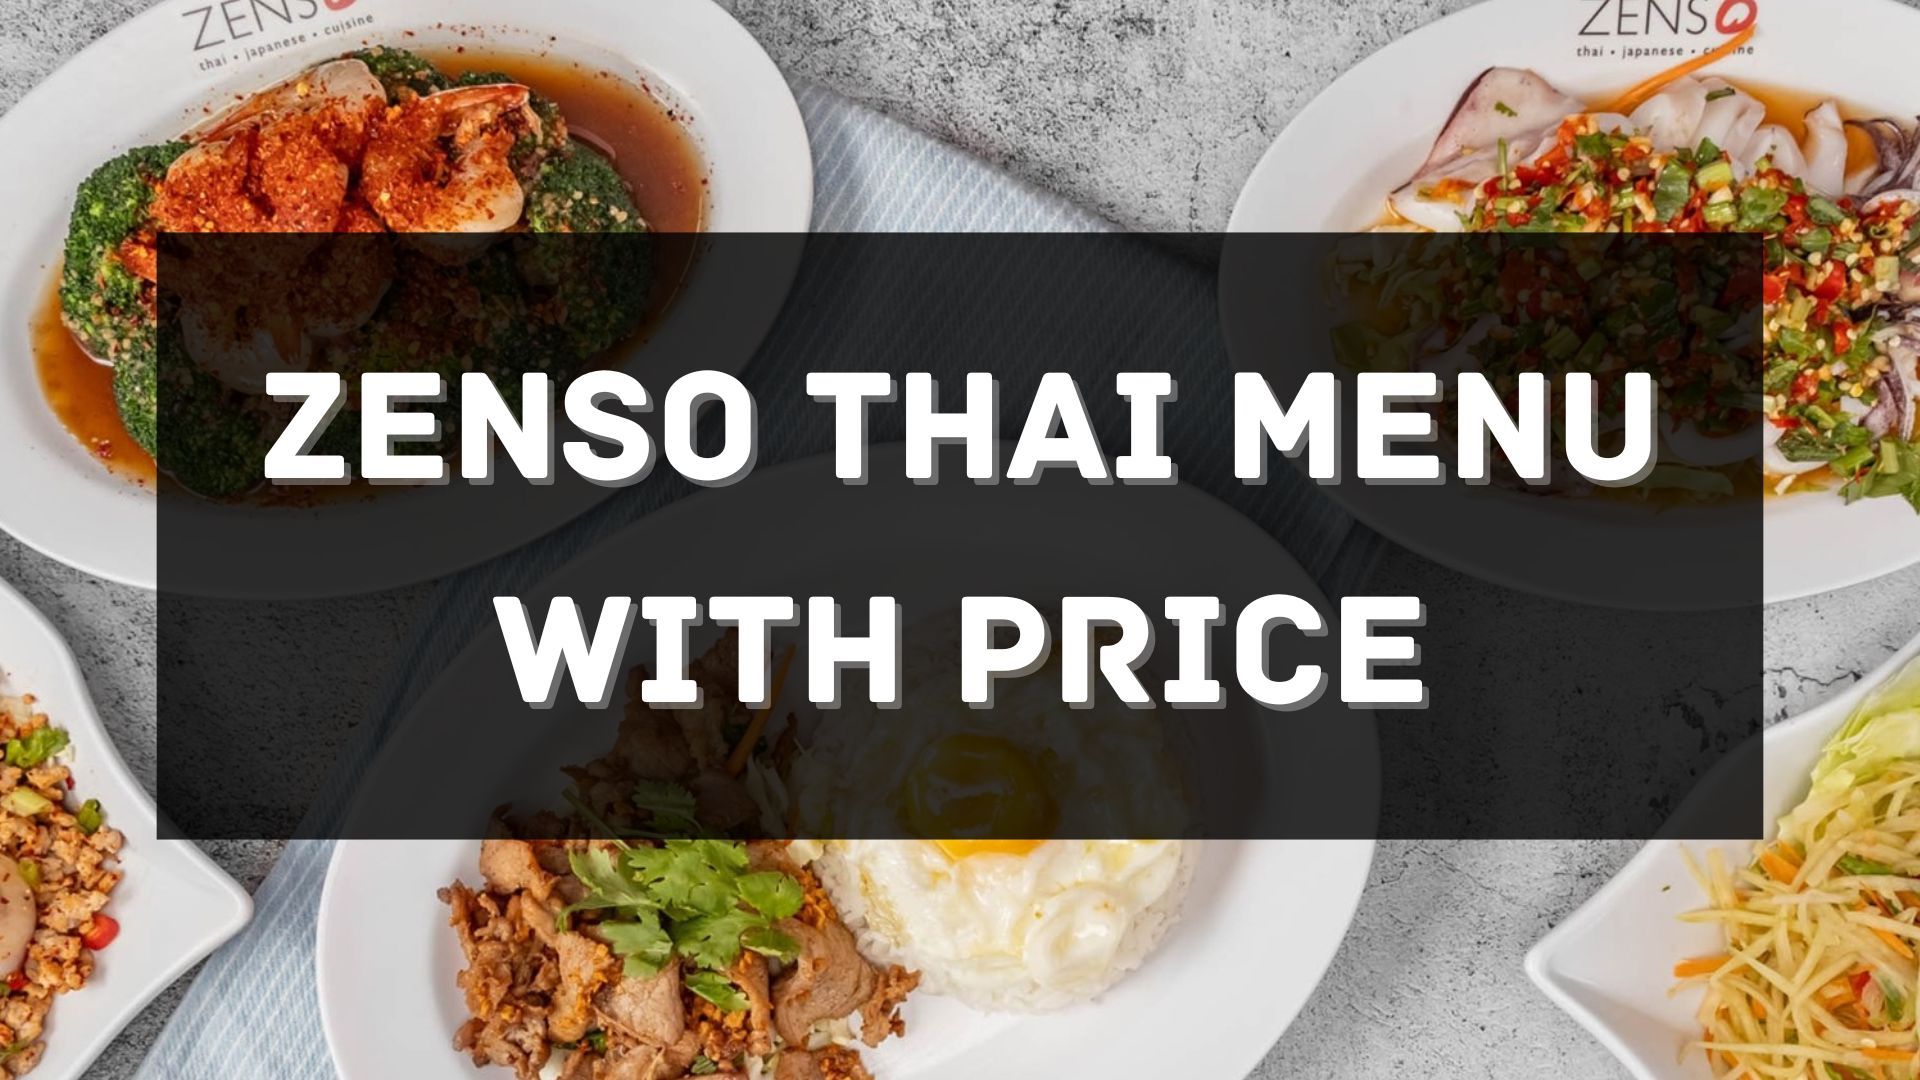 zenso thai menu prices singapore